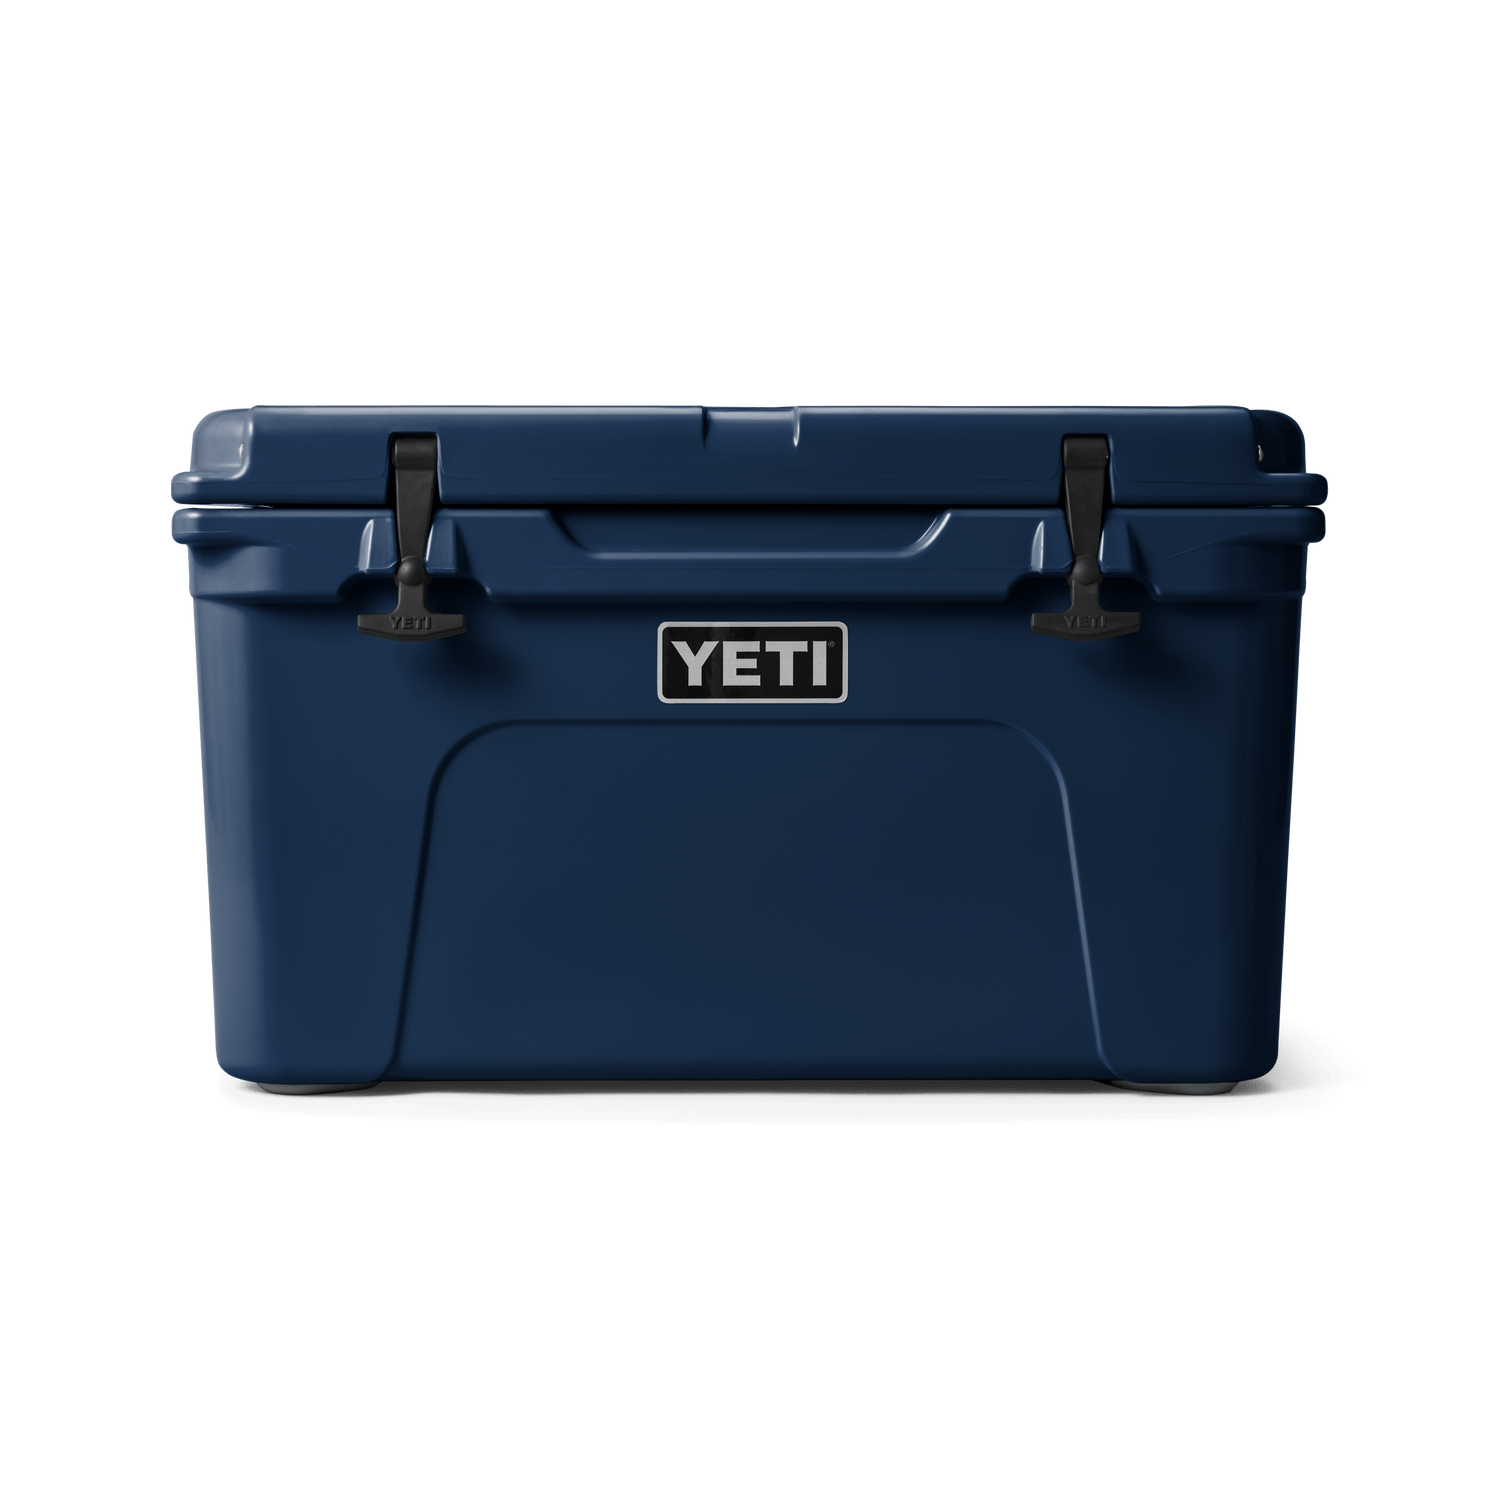 YETI Accessories And Parts – YETI New Zealand